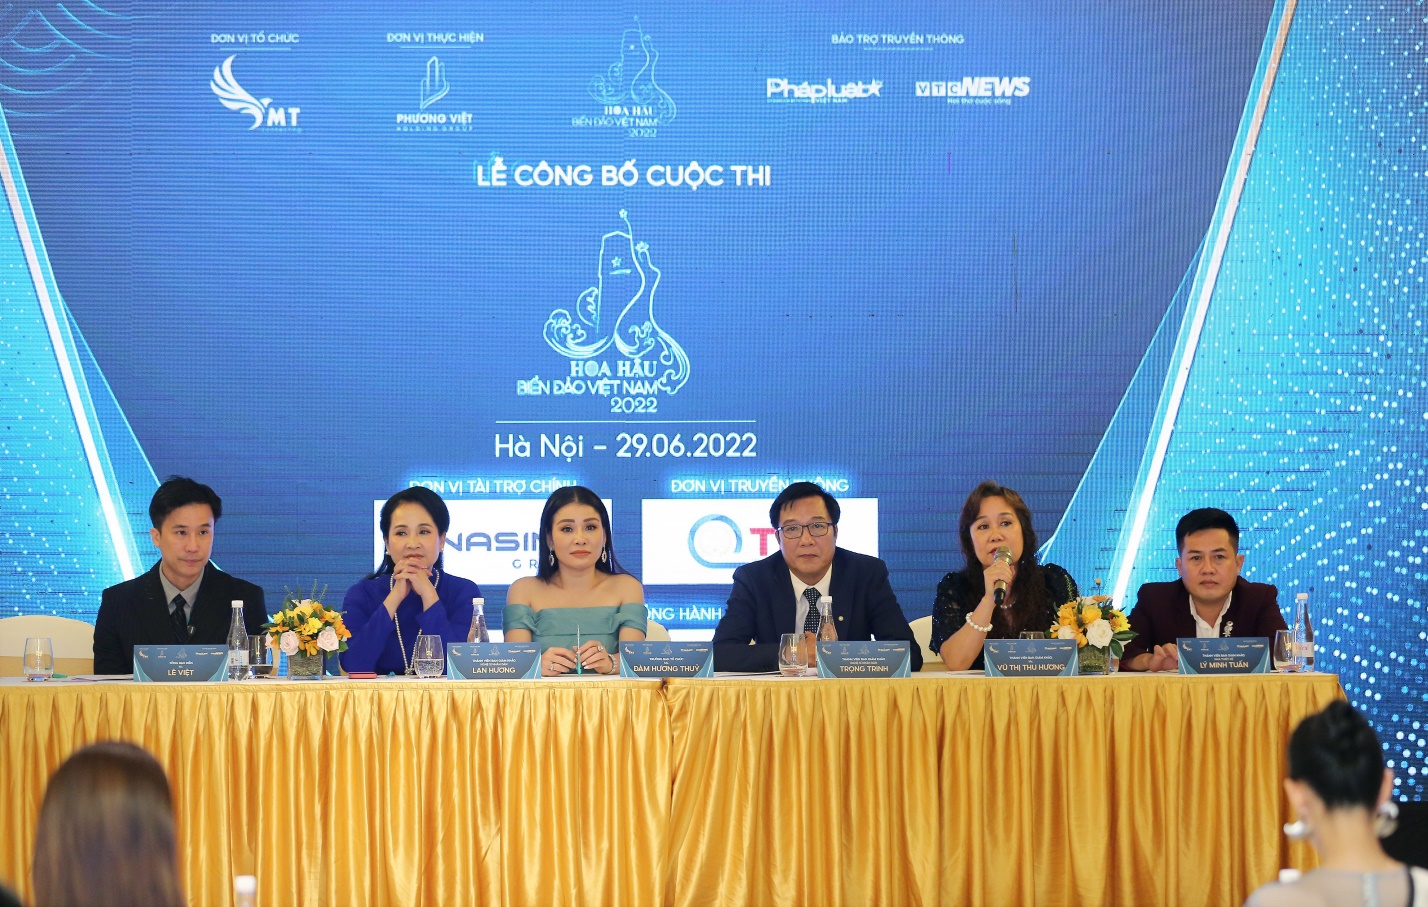 Hoa hậu Biển Đảo Việt Nam 2022: Trưởng ban tổ chức Đàm Hương Thủy và những tâm huyết dành cho chương trình - ảnh 3